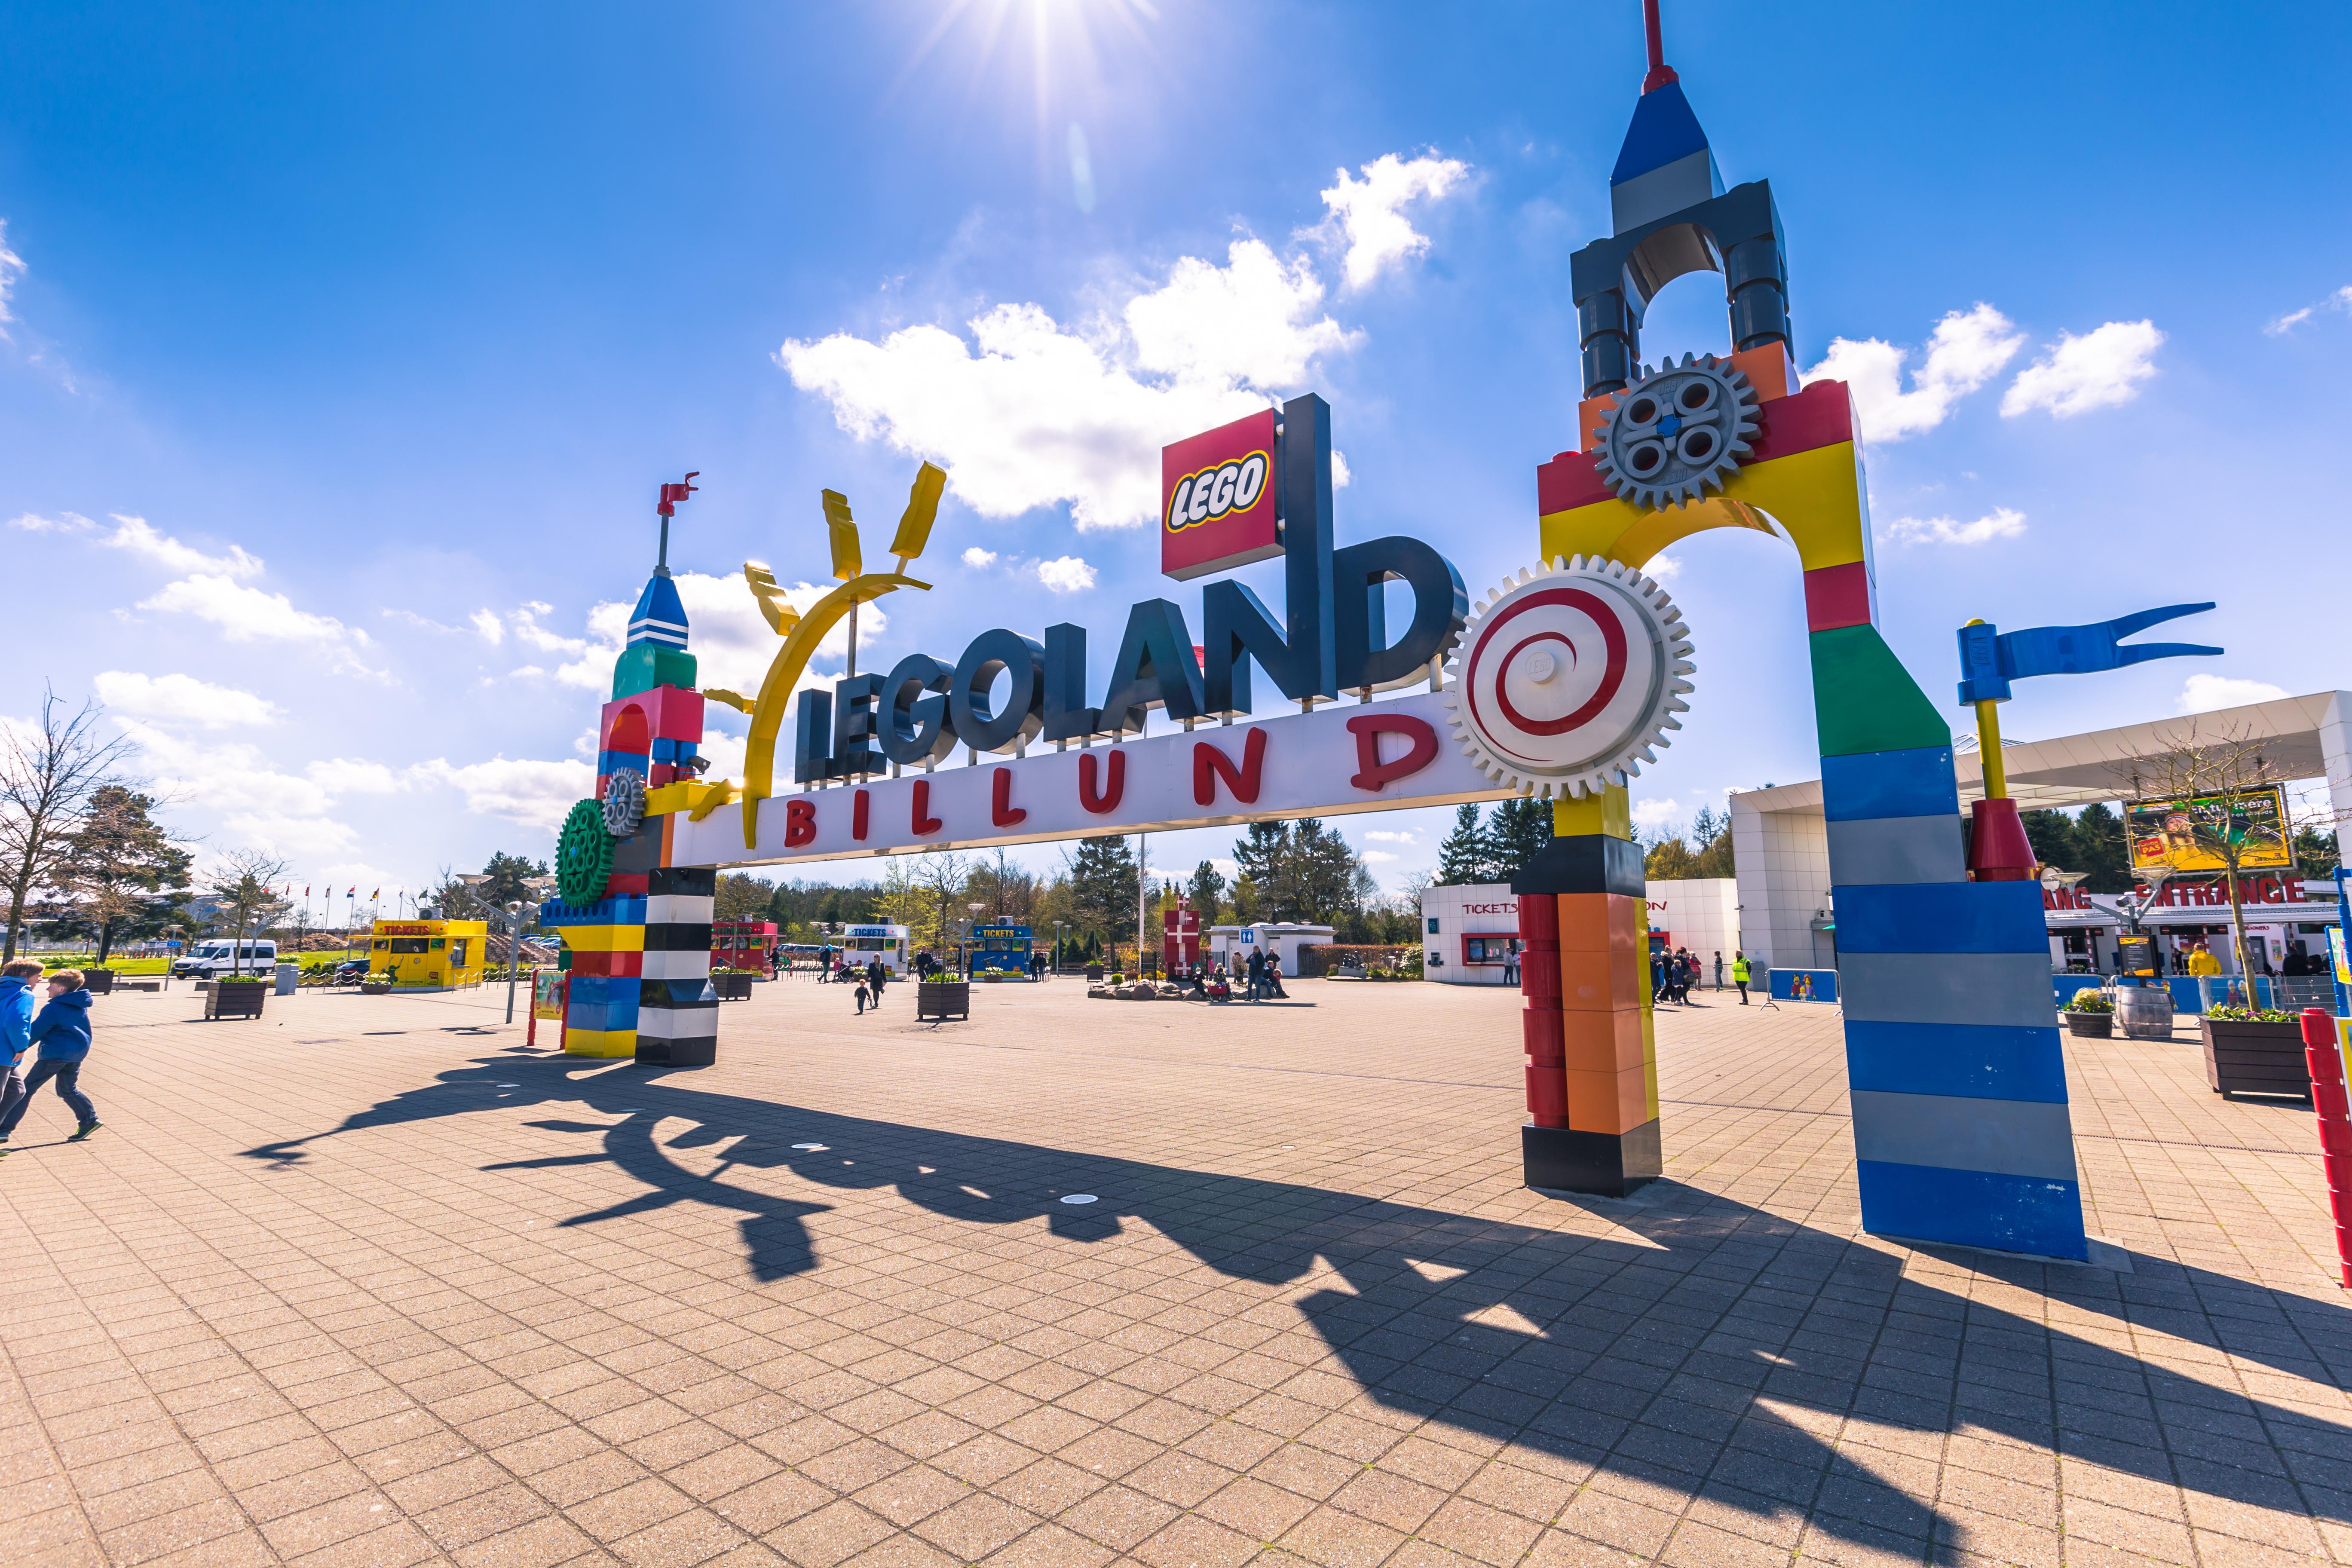 Entrance to Legoland, Billund Denmark region SWT